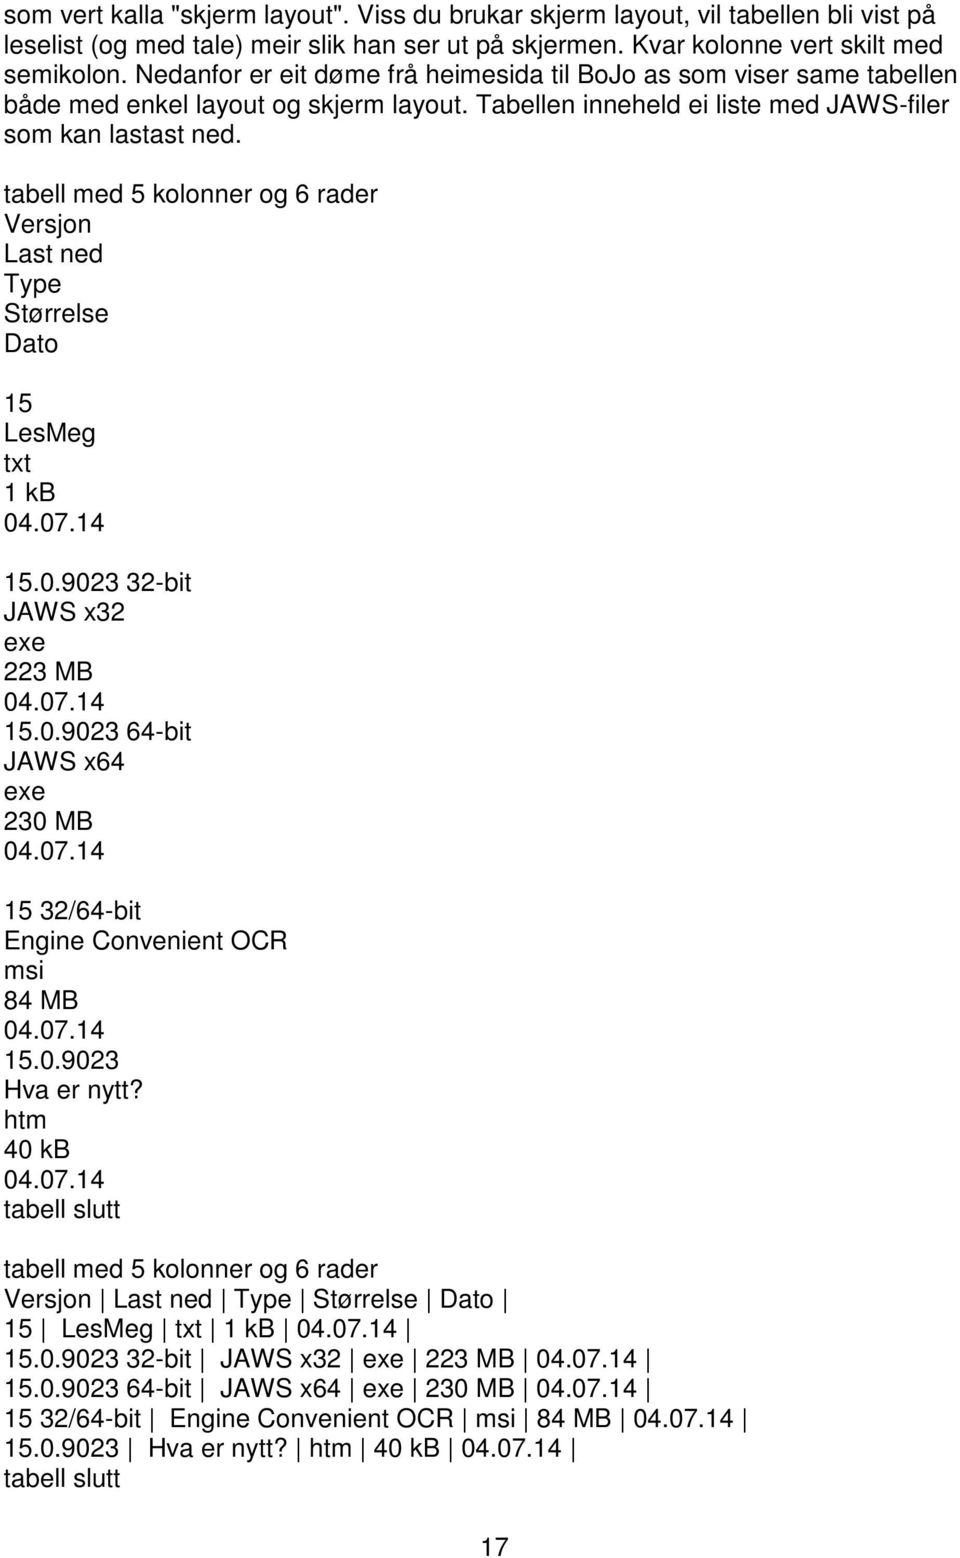 tabell med 5 kolonner og 6 rader Versjon Last ned Type Størrelse Dato 15 LesMeg txt 1 kb 04.07.14 15.0.9023 32-bit JAWS x32 exe 223 MB 04.07.14 15.0.9023 64-bit JAWS x64 exe 230 MB 04.07.14 15 32/64-bit Engine Convenient OCR msi 84 MB 04.